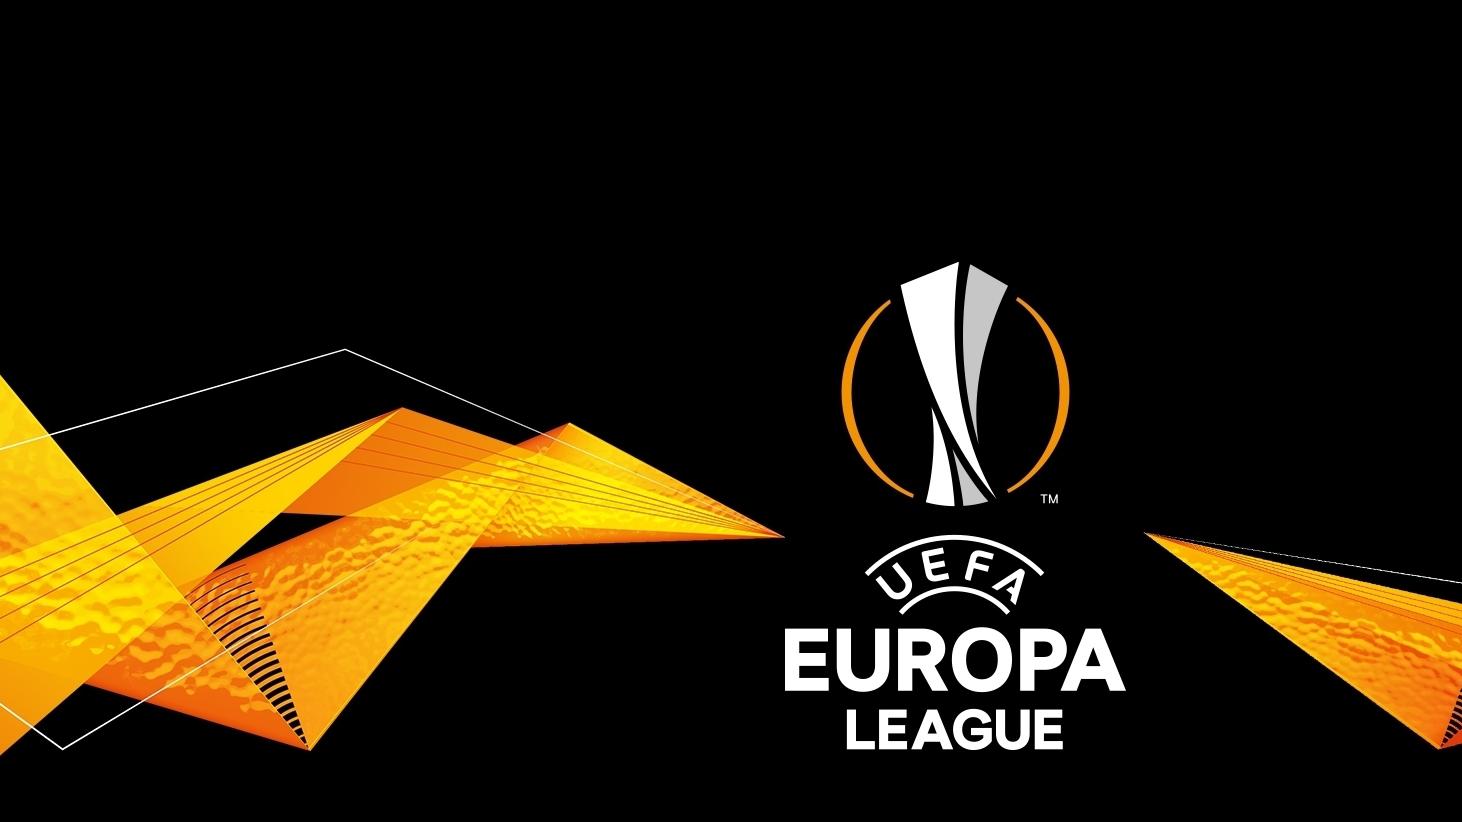 Nuova brand identity per la UEFA Europa League | La UEFA | UEFA.com